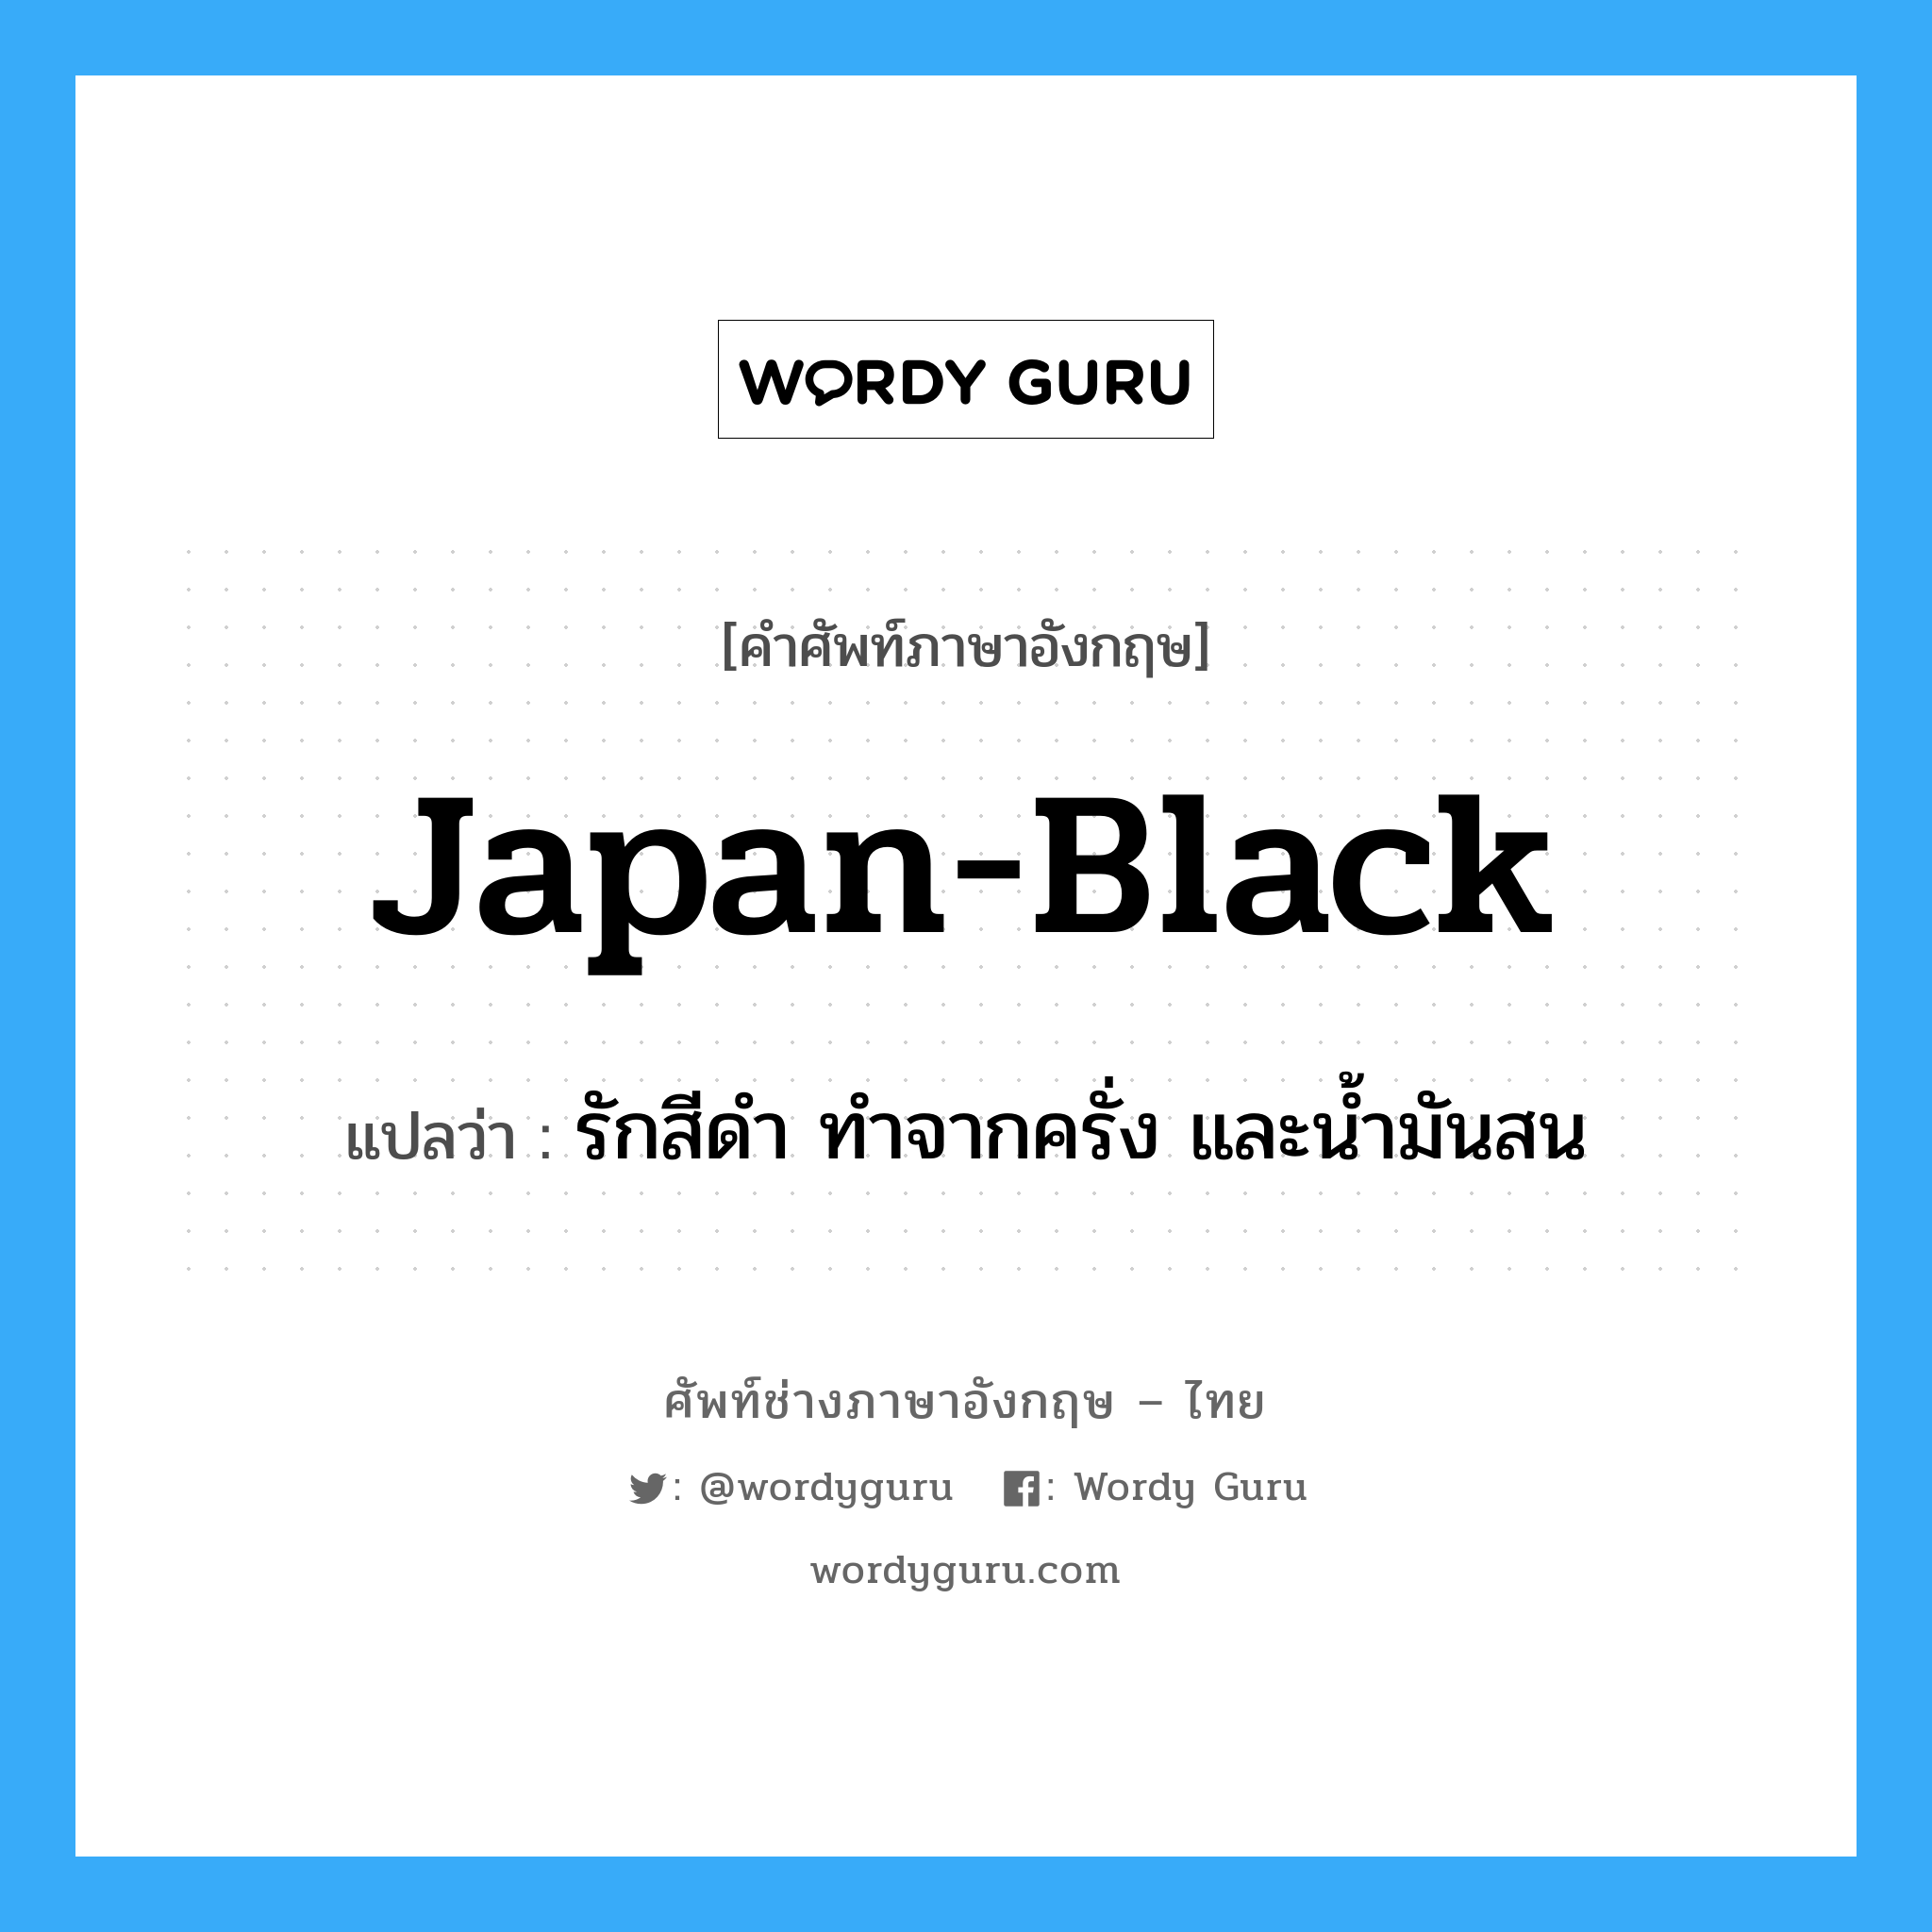 japan-black แปลว่า?, คำศัพท์ช่างภาษาอังกฤษ - ไทย japan-black คำศัพท์ภาษาอังกฤษ japan-black แปลว่า รักสีดำ ทำจากครั่ง และน้ำมันสน